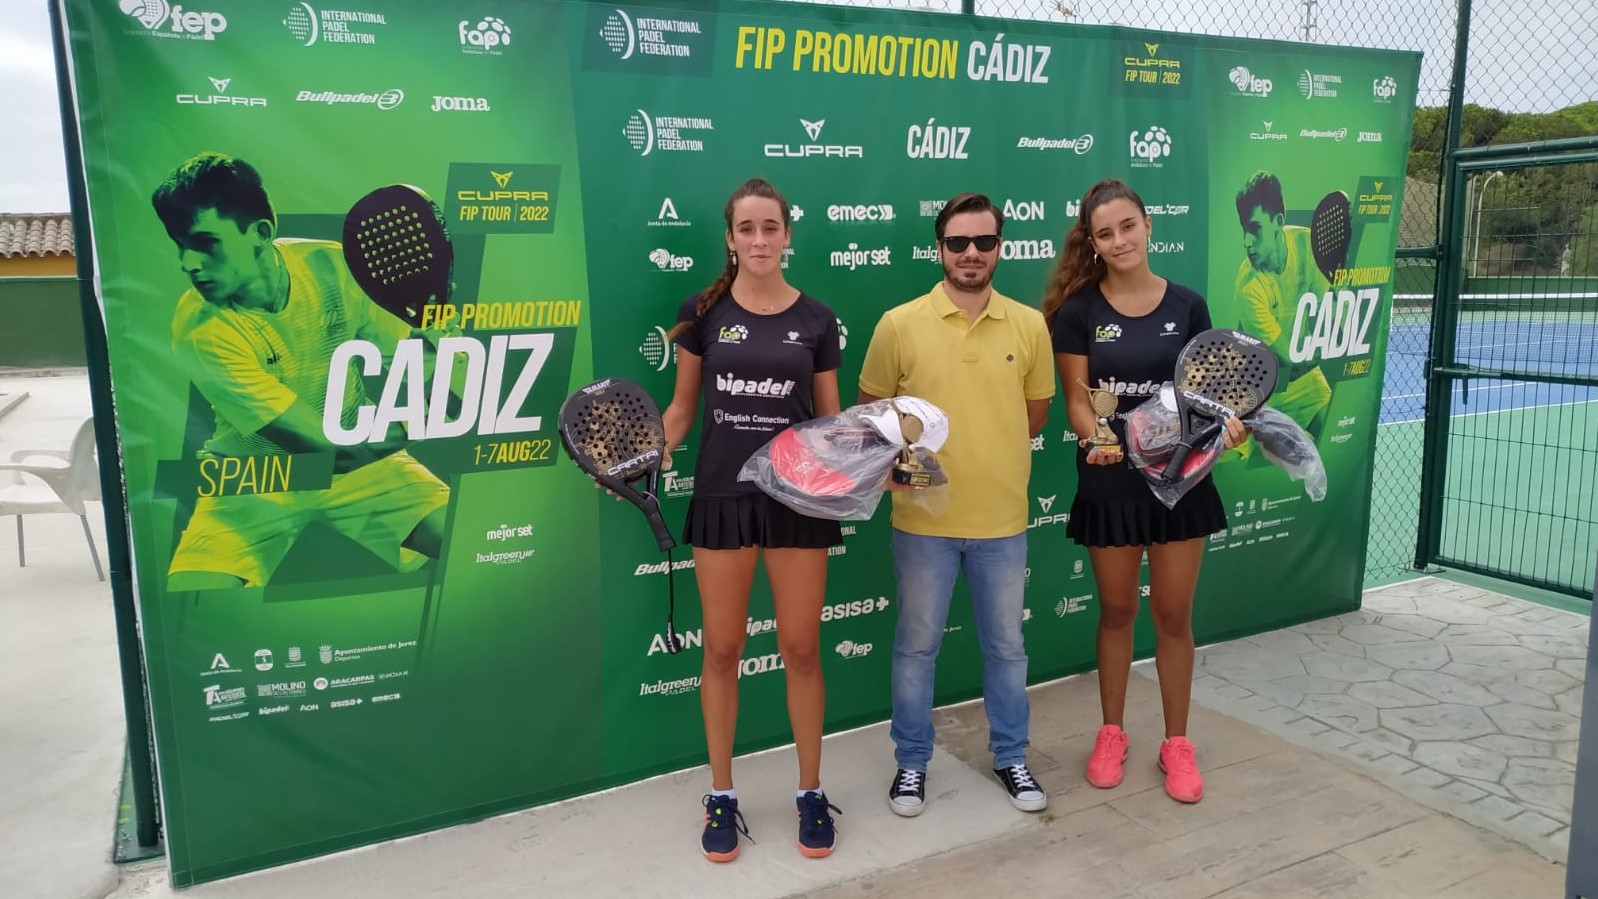 De zussen Rodriguez winnen de FIP-promotie van Cadiz